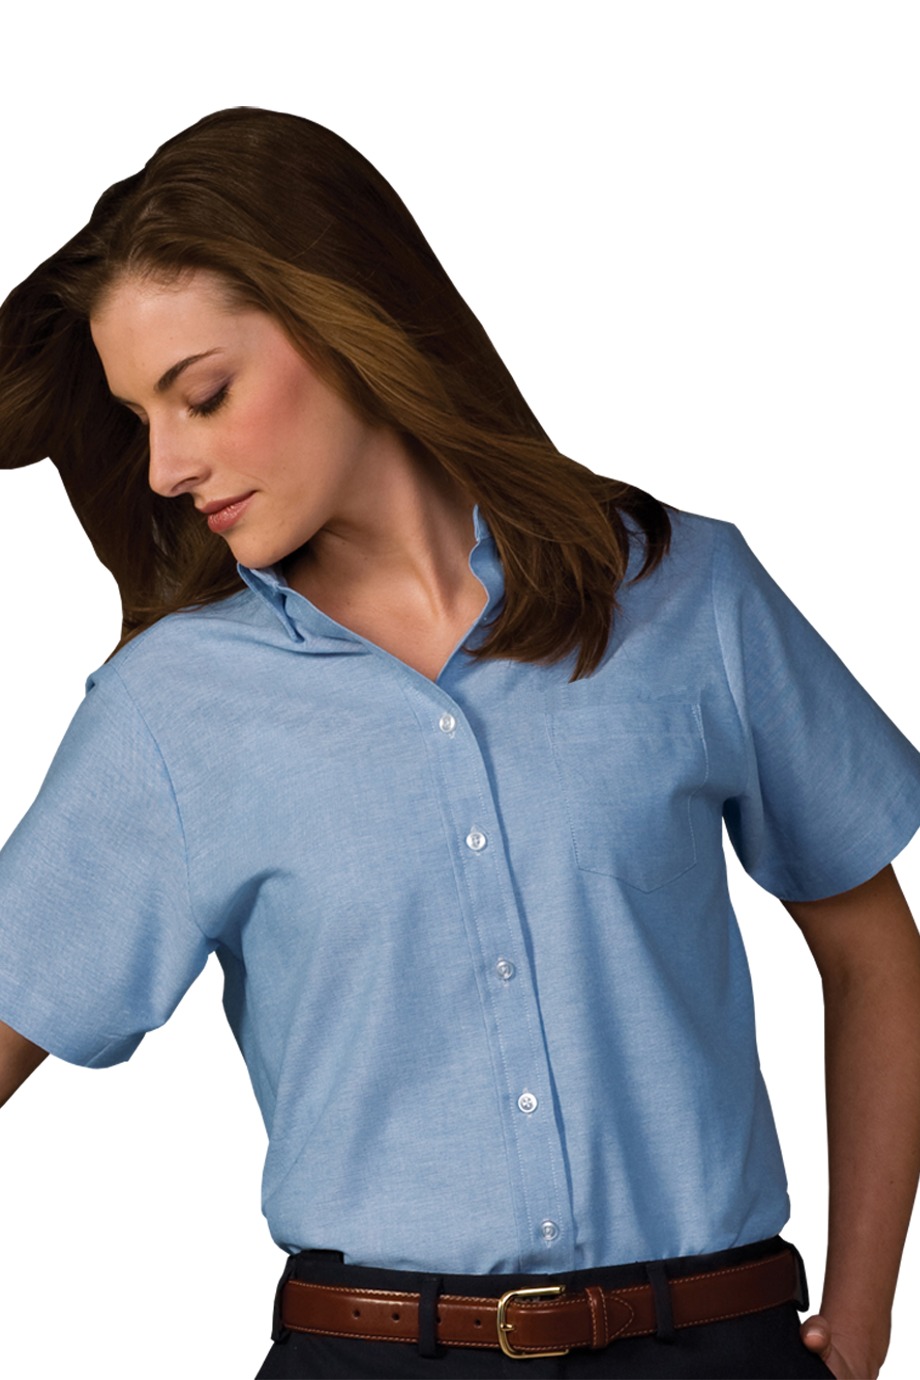 Edwards Garment 5027 - Women's Short Sleeve Dress Button Down Oxford